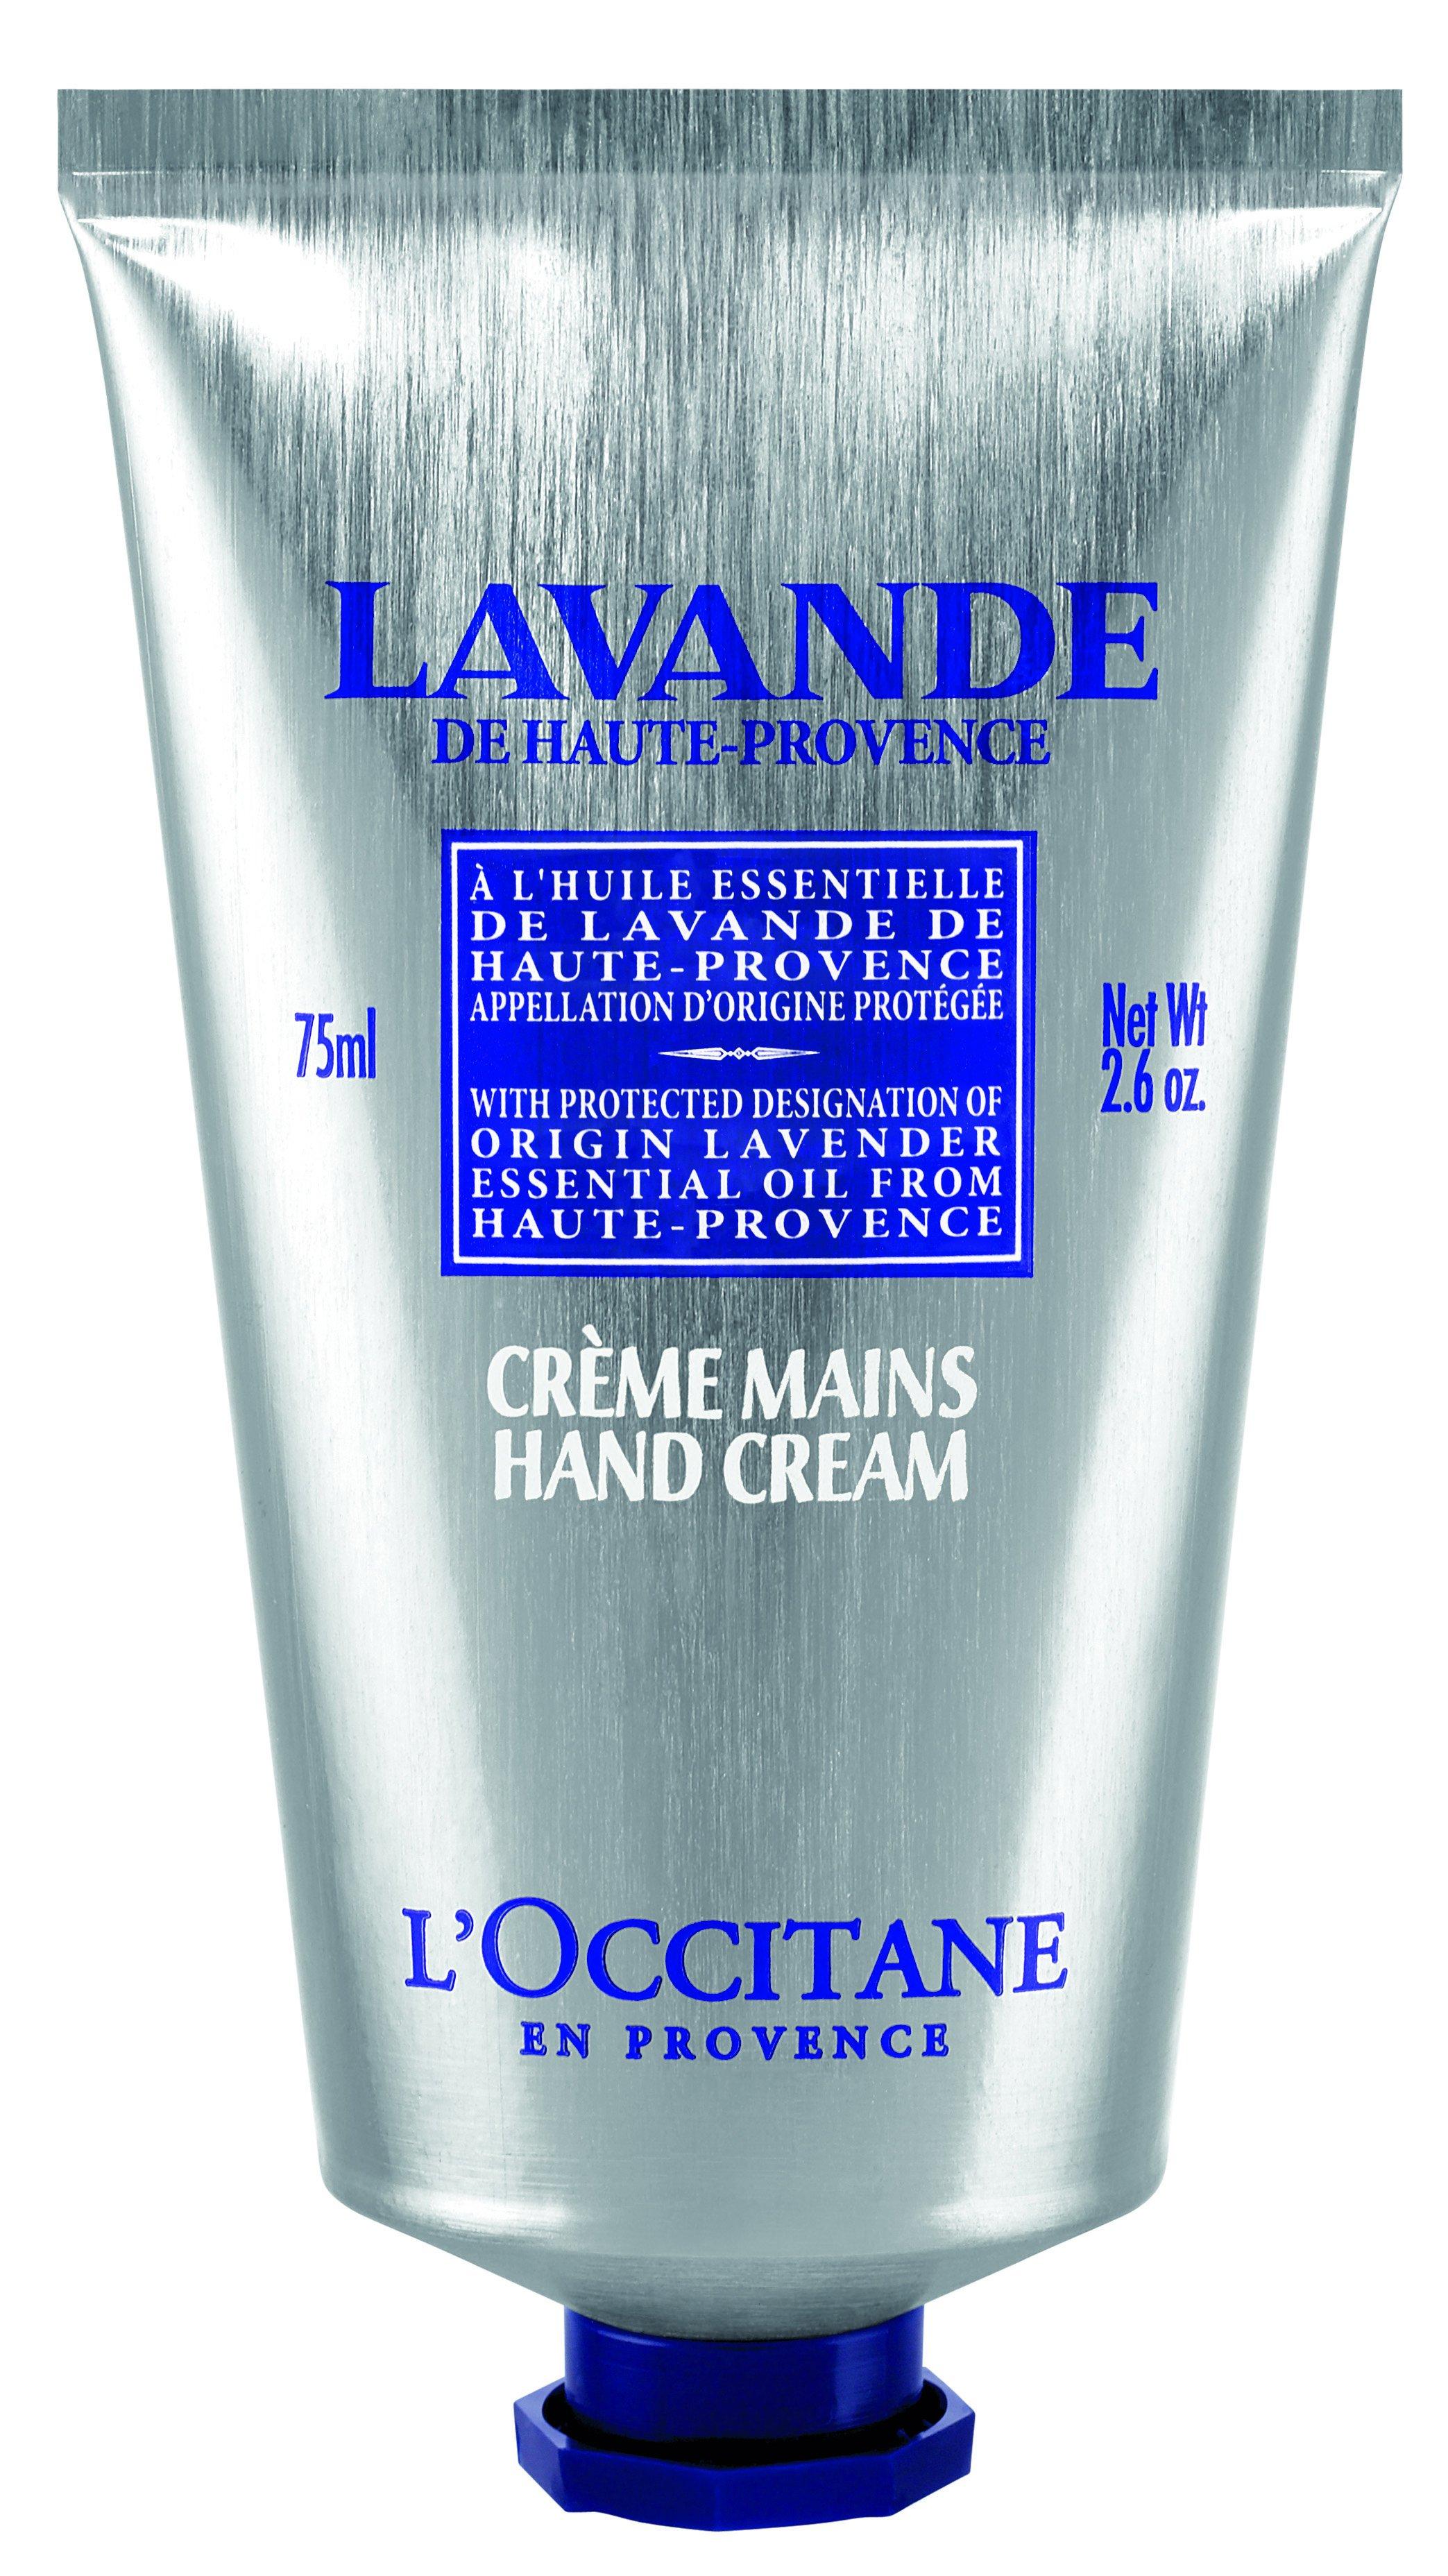 L'OCCITANE Lavande creme mains Crème Mains Lavande 